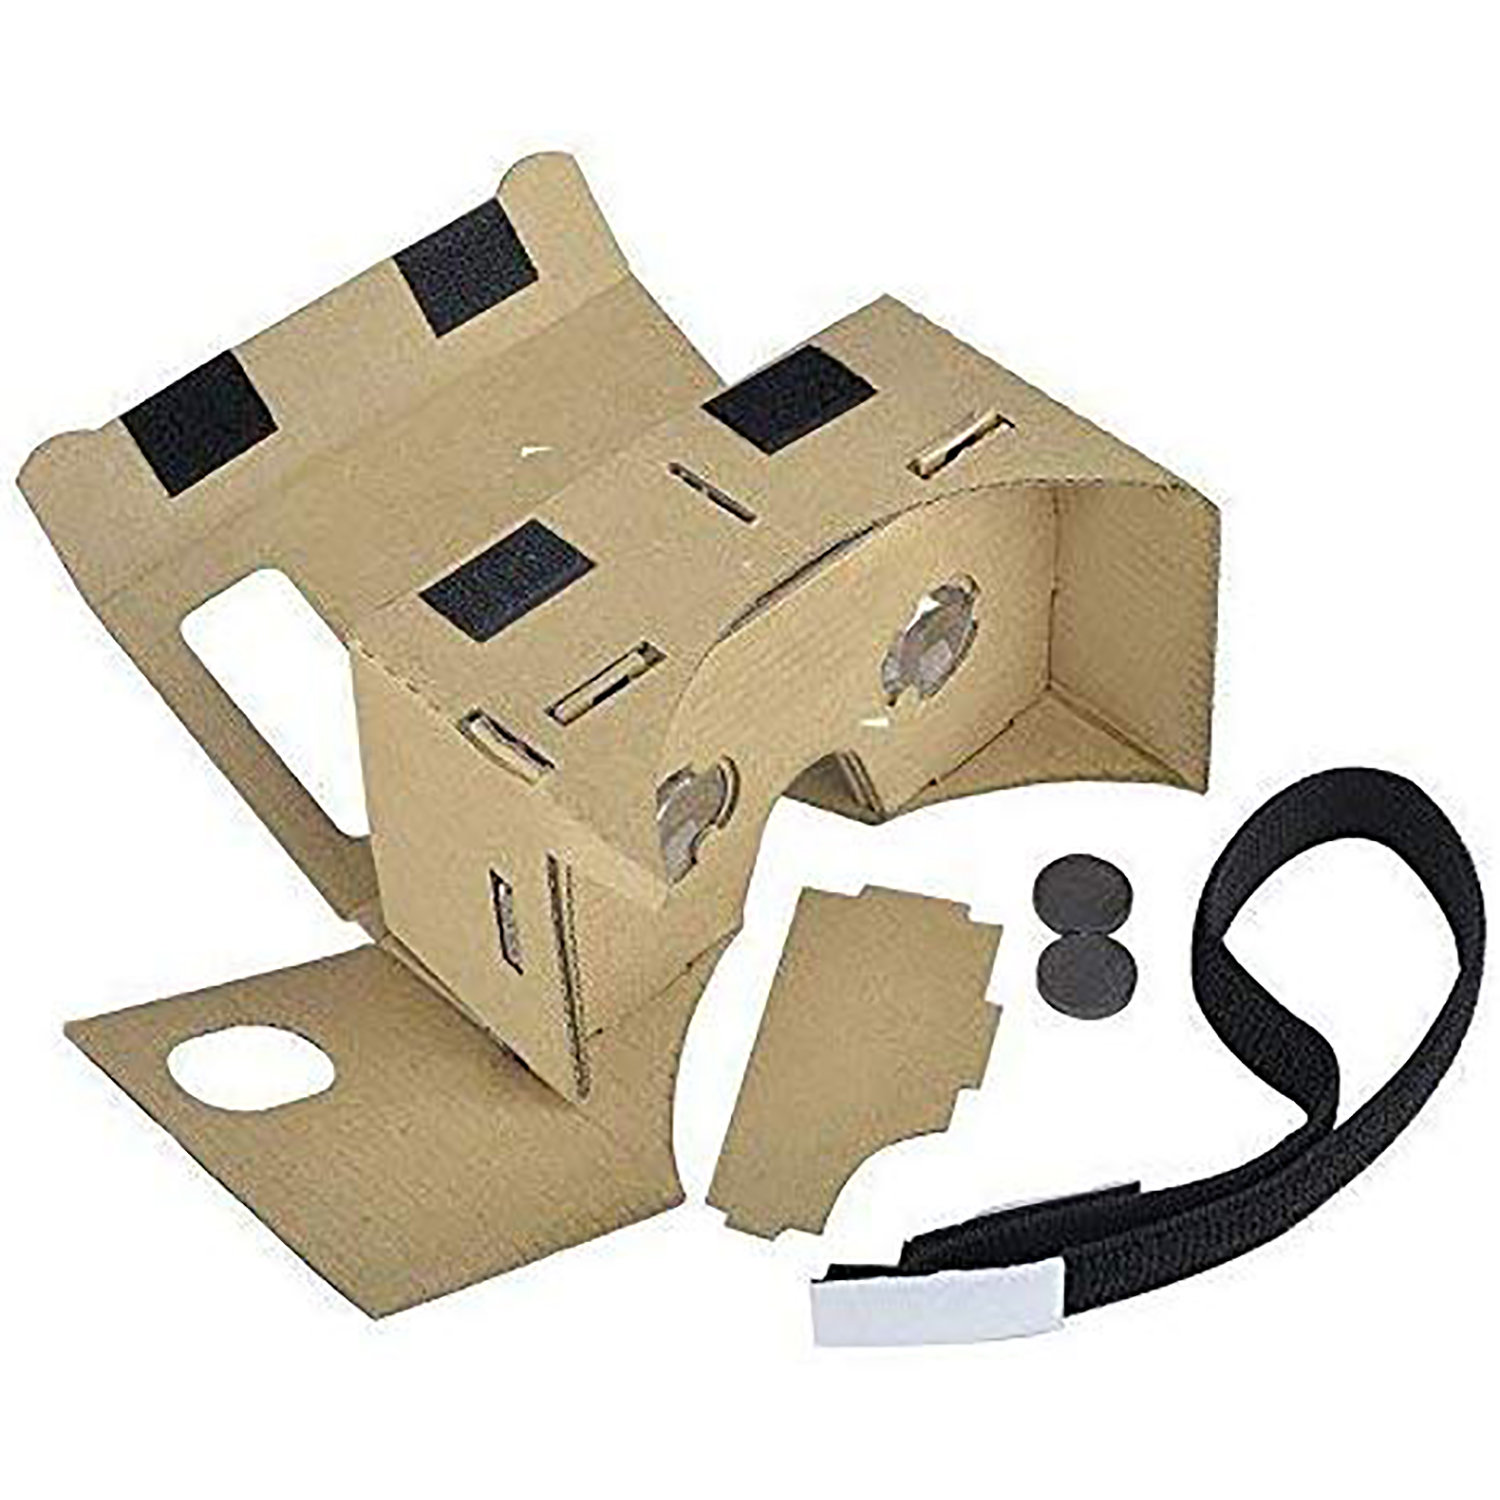  I AM Kartong VR kartong Headset Kit V1